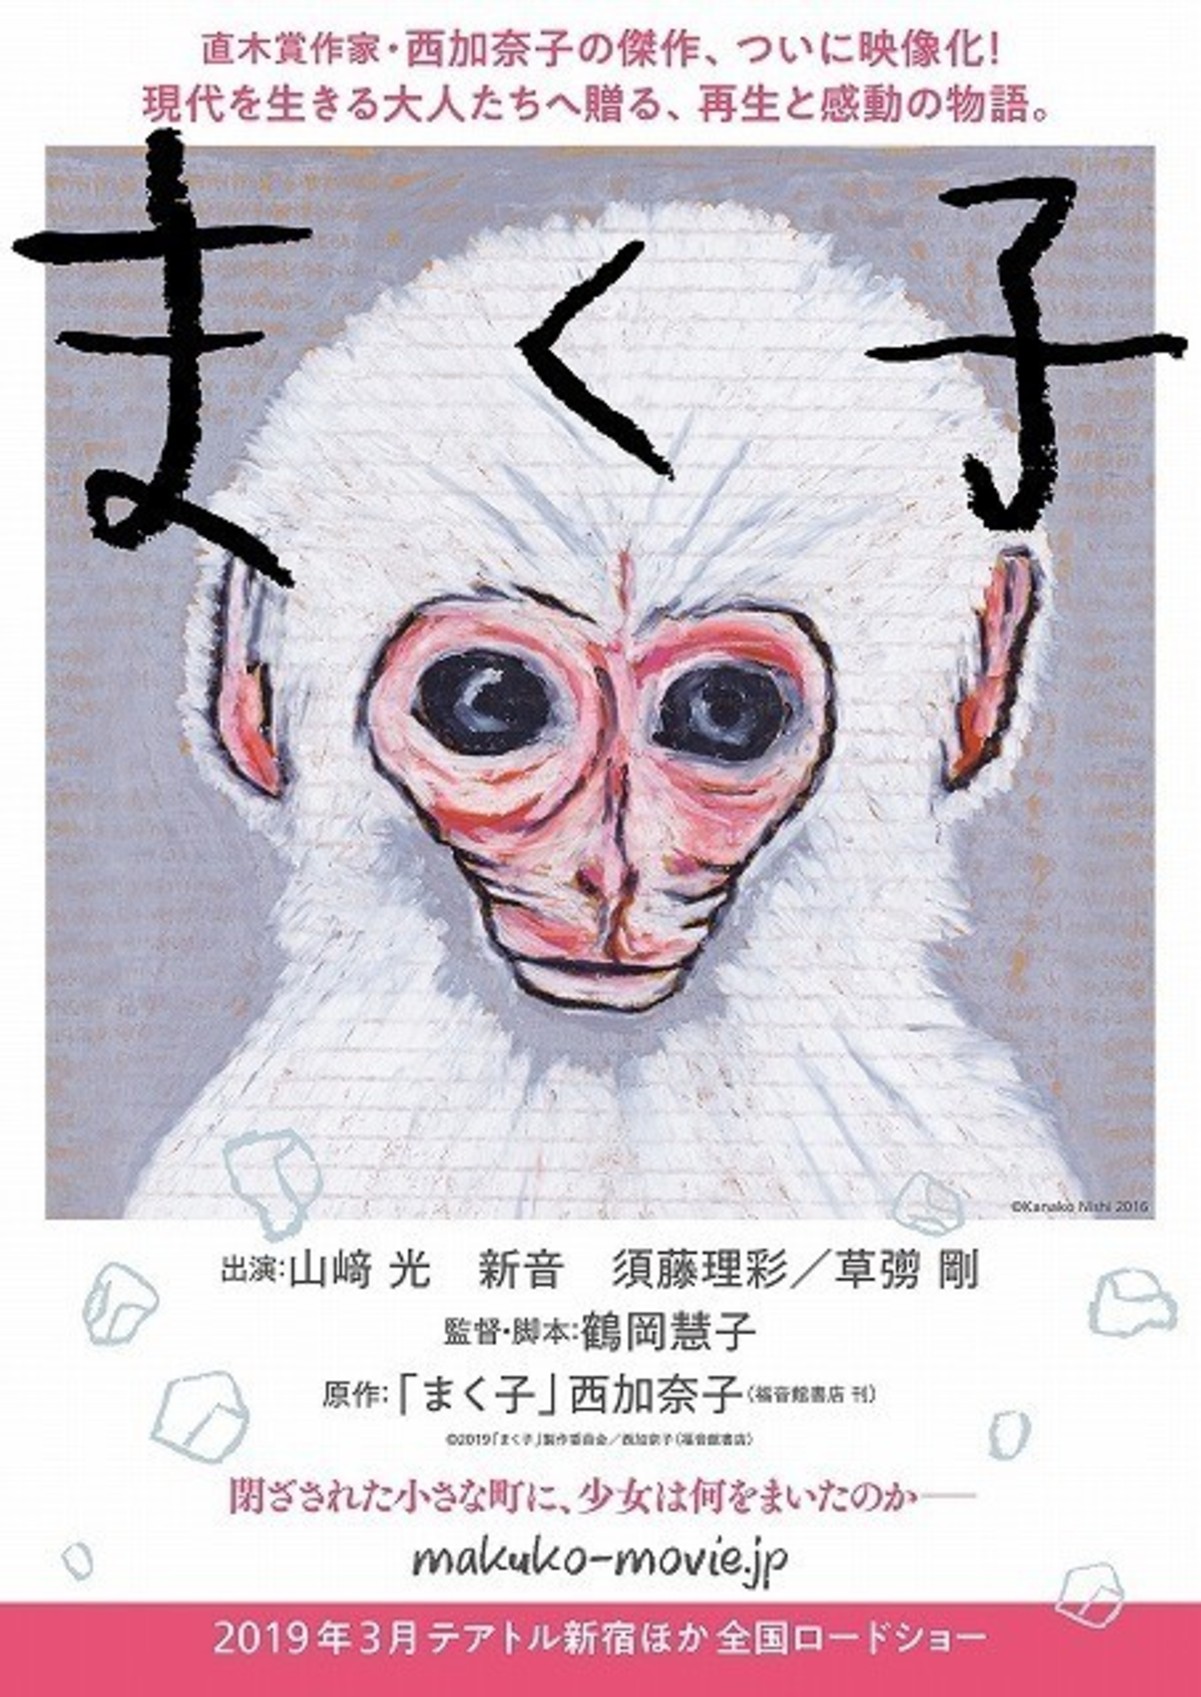 西加奈子直筆の 猿 を使用 山崎光 草なぎ剛 まく子 チラシビジュアル完成 映画ニュース 映画 Com